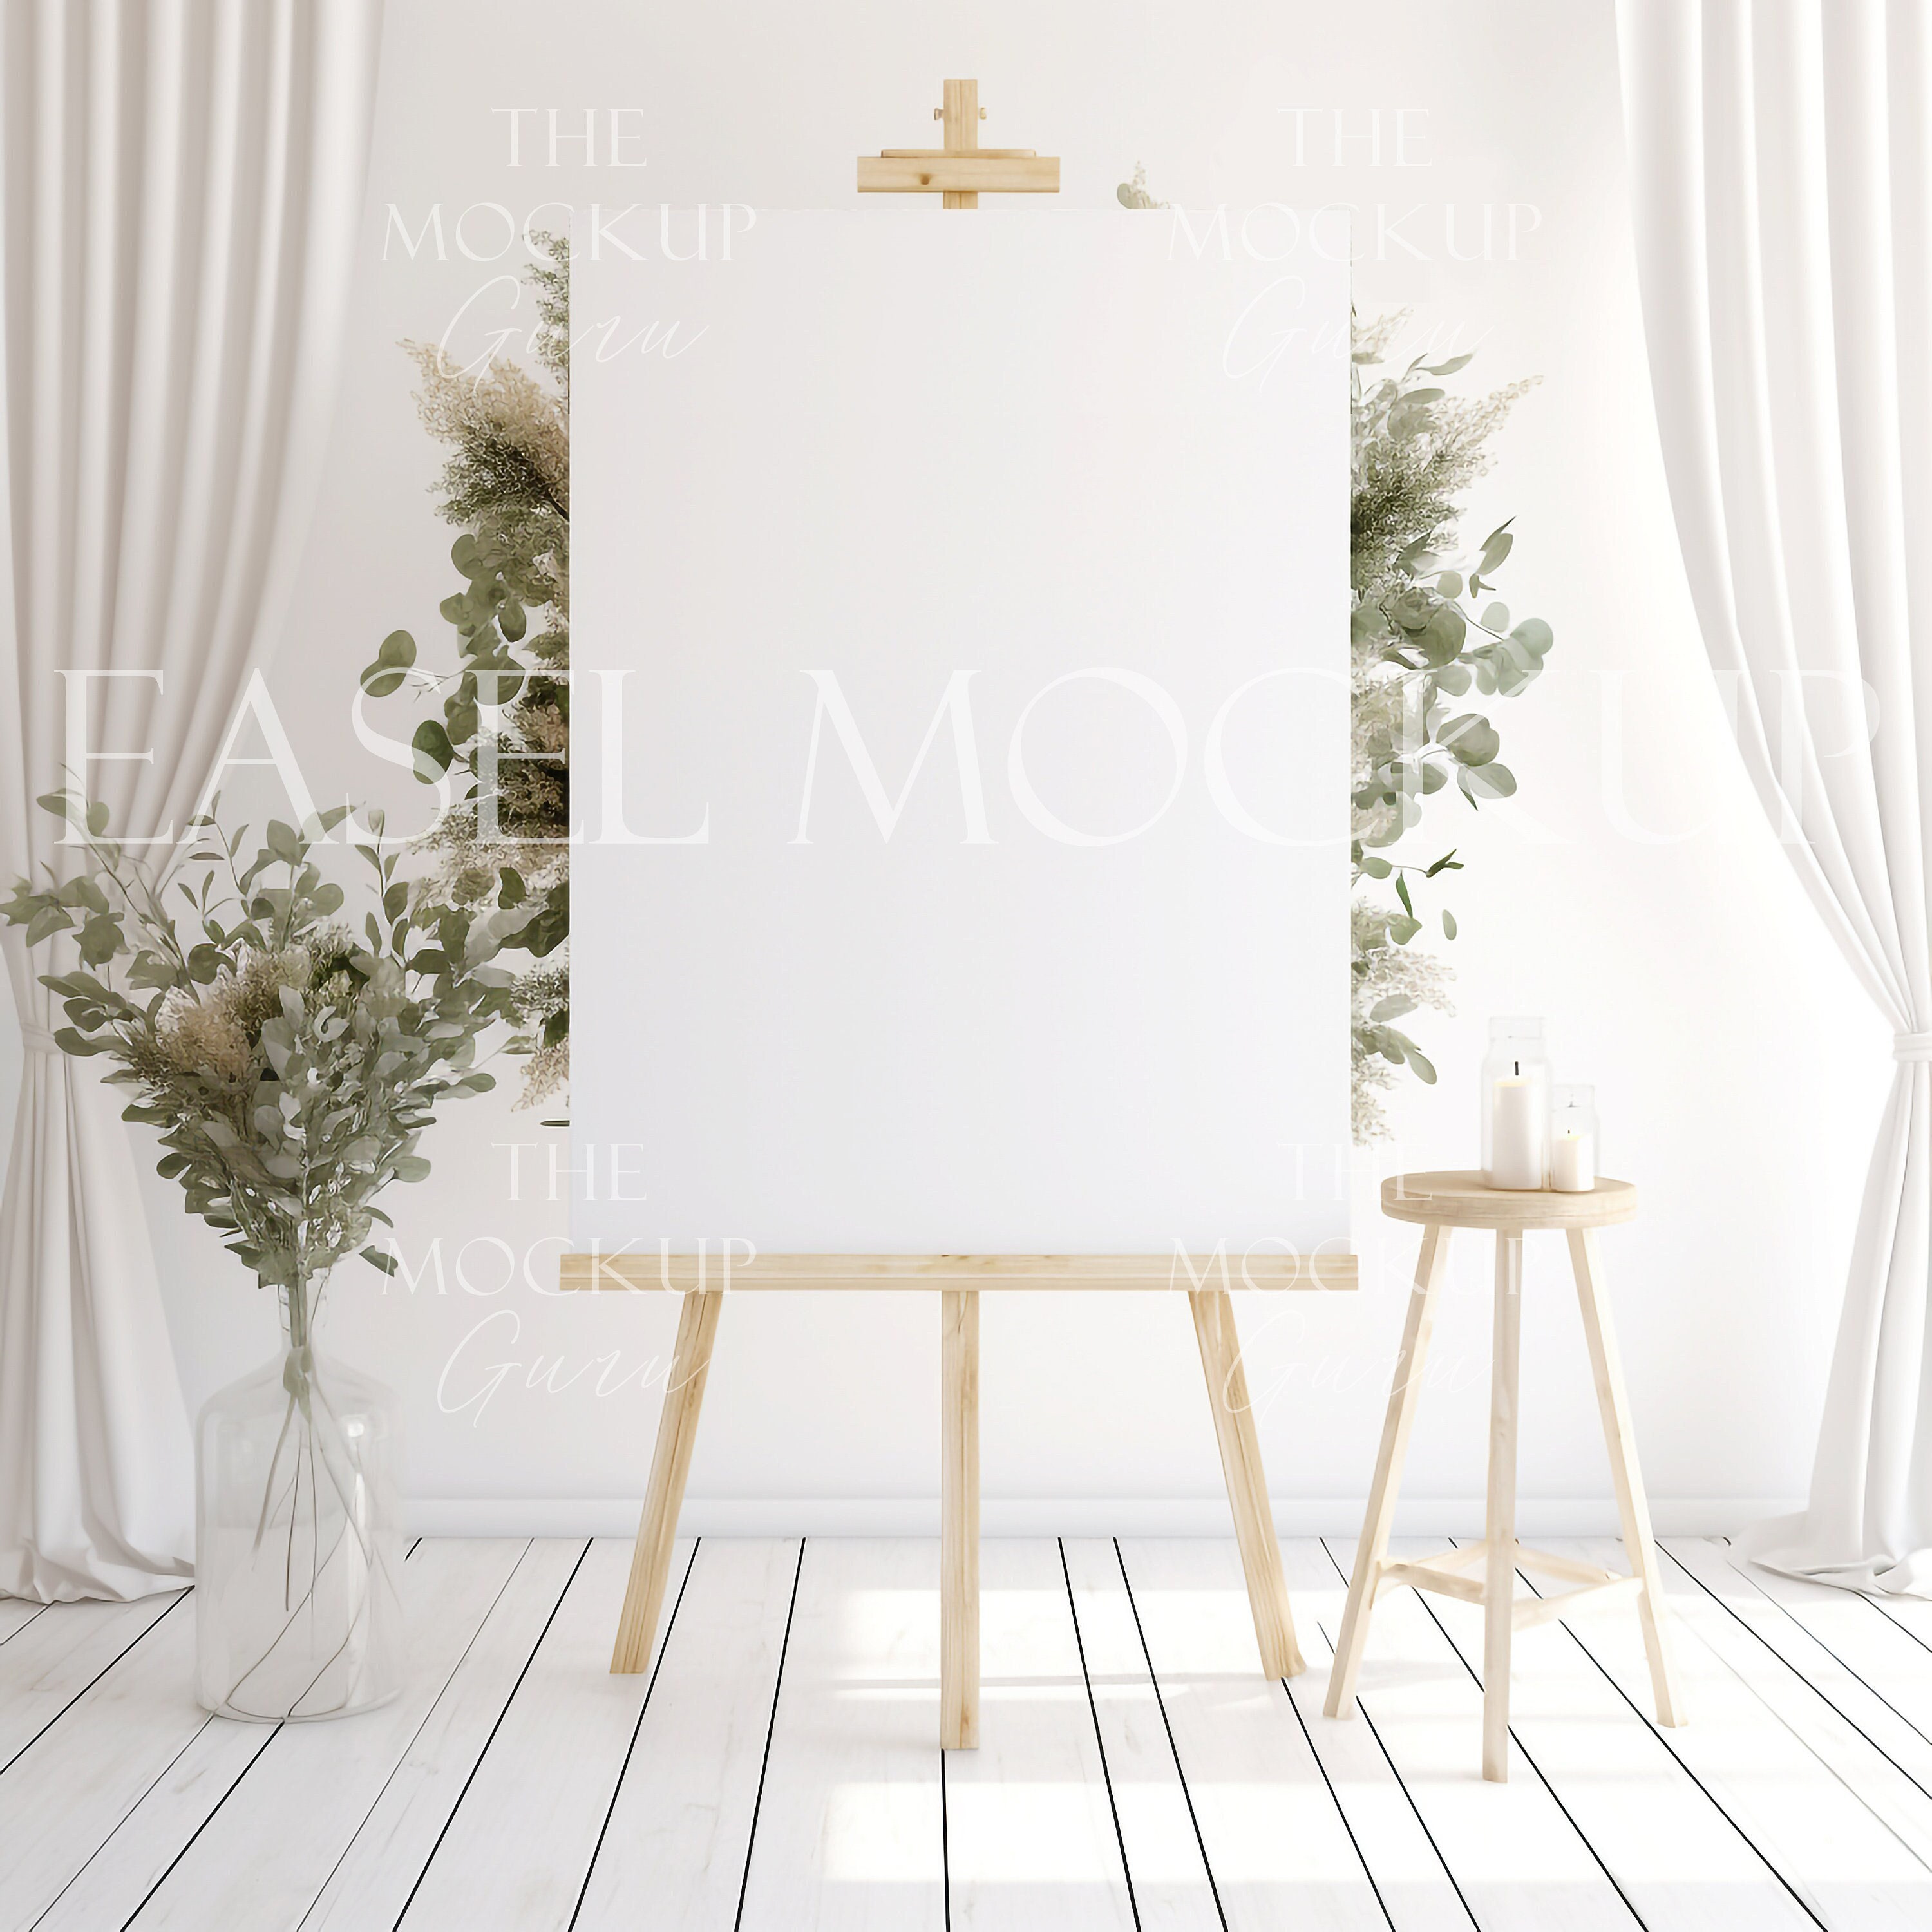 Easel Mockup, Bridal Shower Sign Mockup Image, Welcome Sign Mockup, Wedding  Stationary Mockup, 24x36 POSTER, Vdieu-299 